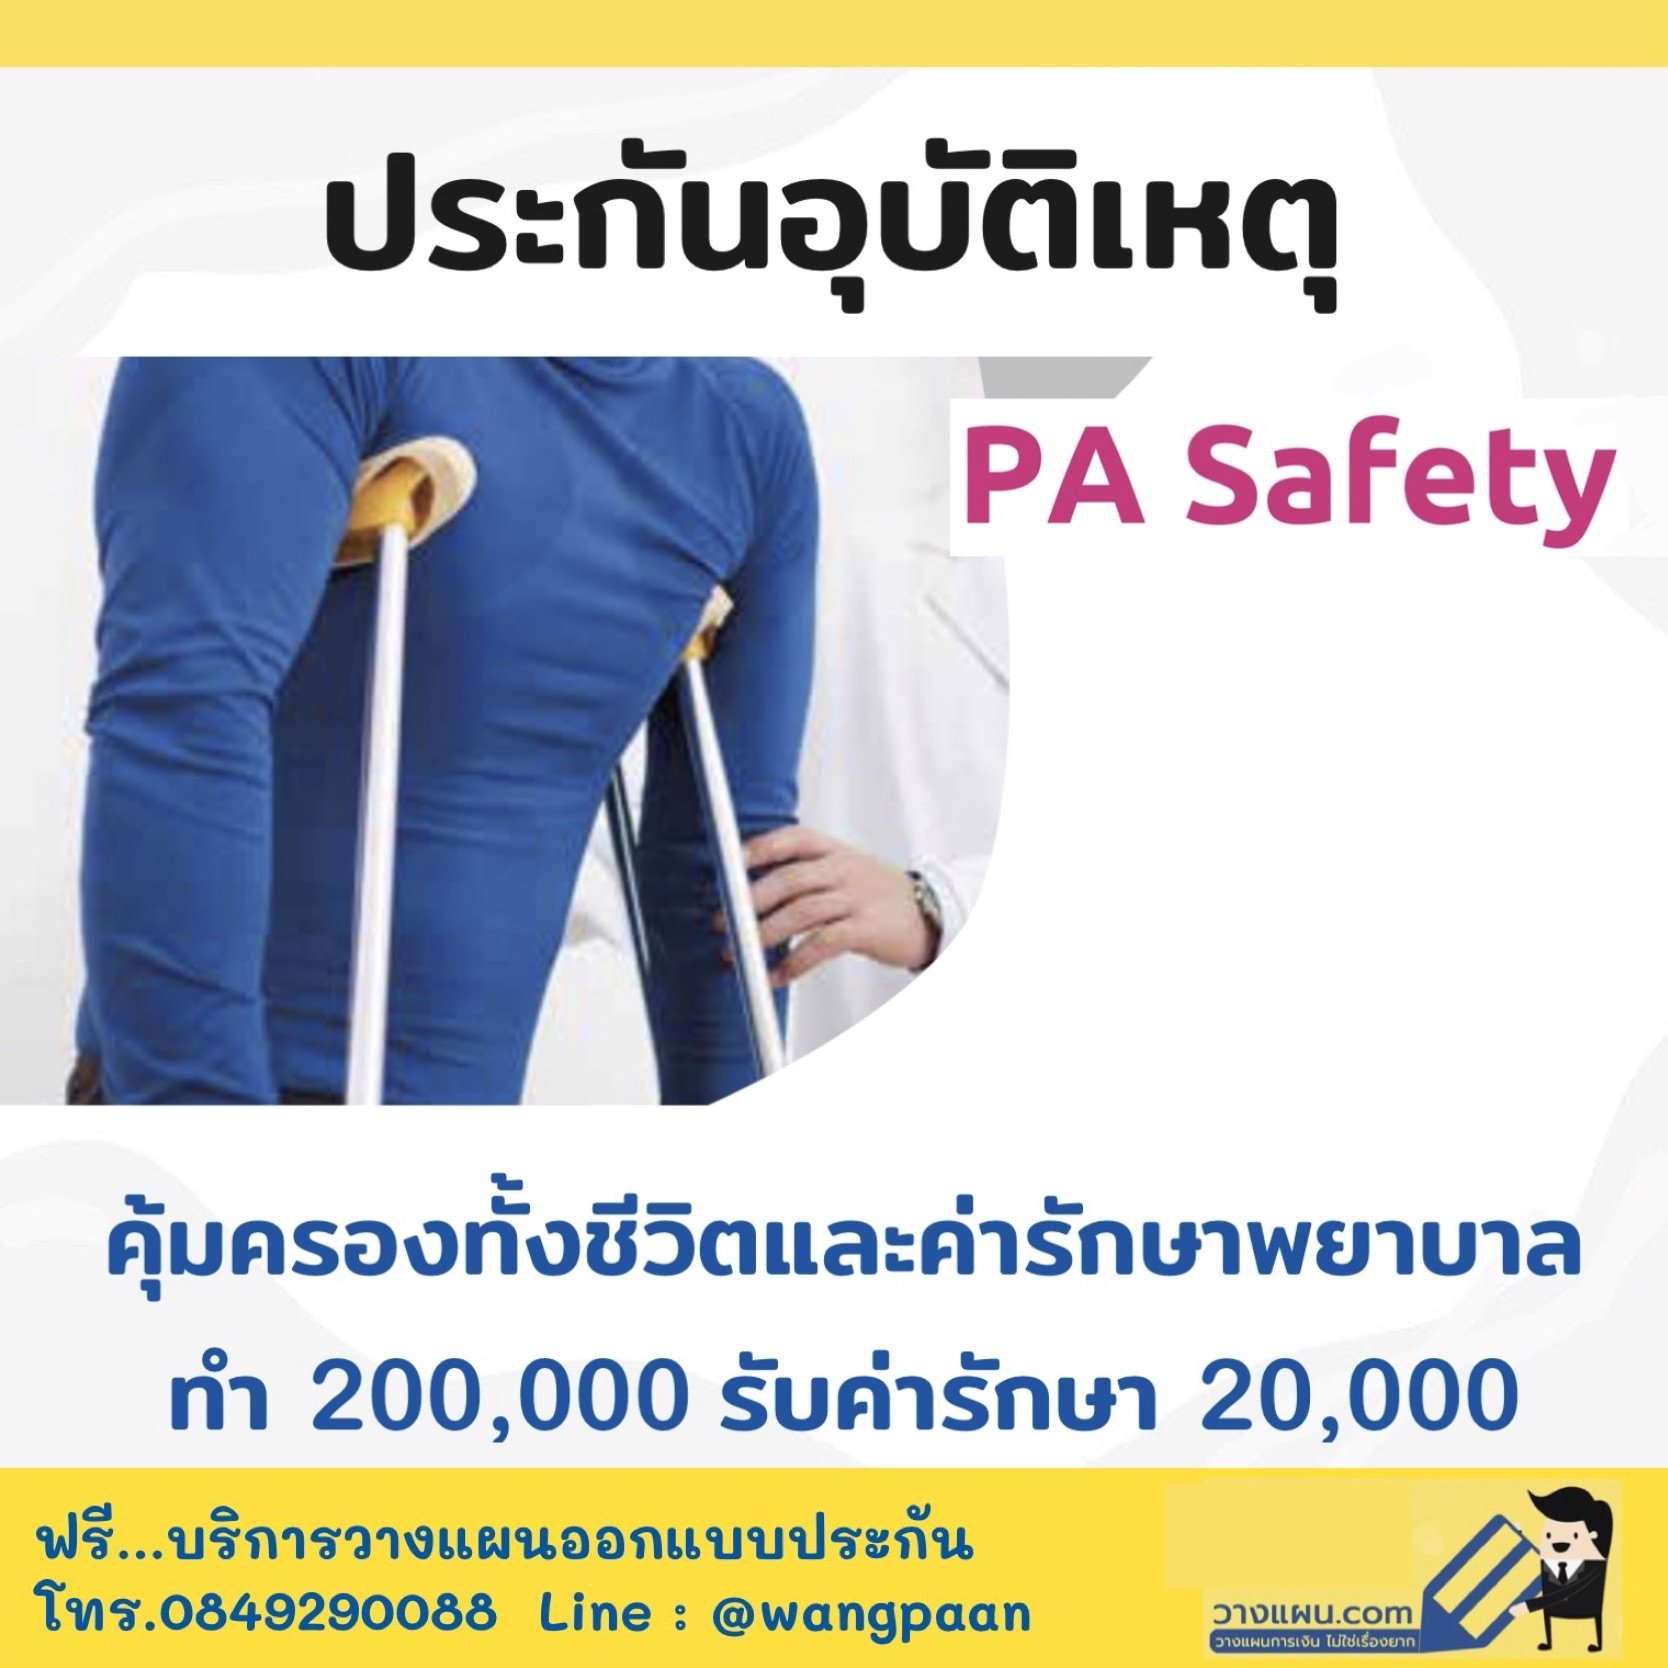 ประกันอุบัติเหตุ PA Safety คุ้มครองทั้งชีวิตและค่ารักษาพยาบาลจากอุบัติเหตุ ให้เป็นวงเงินต่อครั้ง